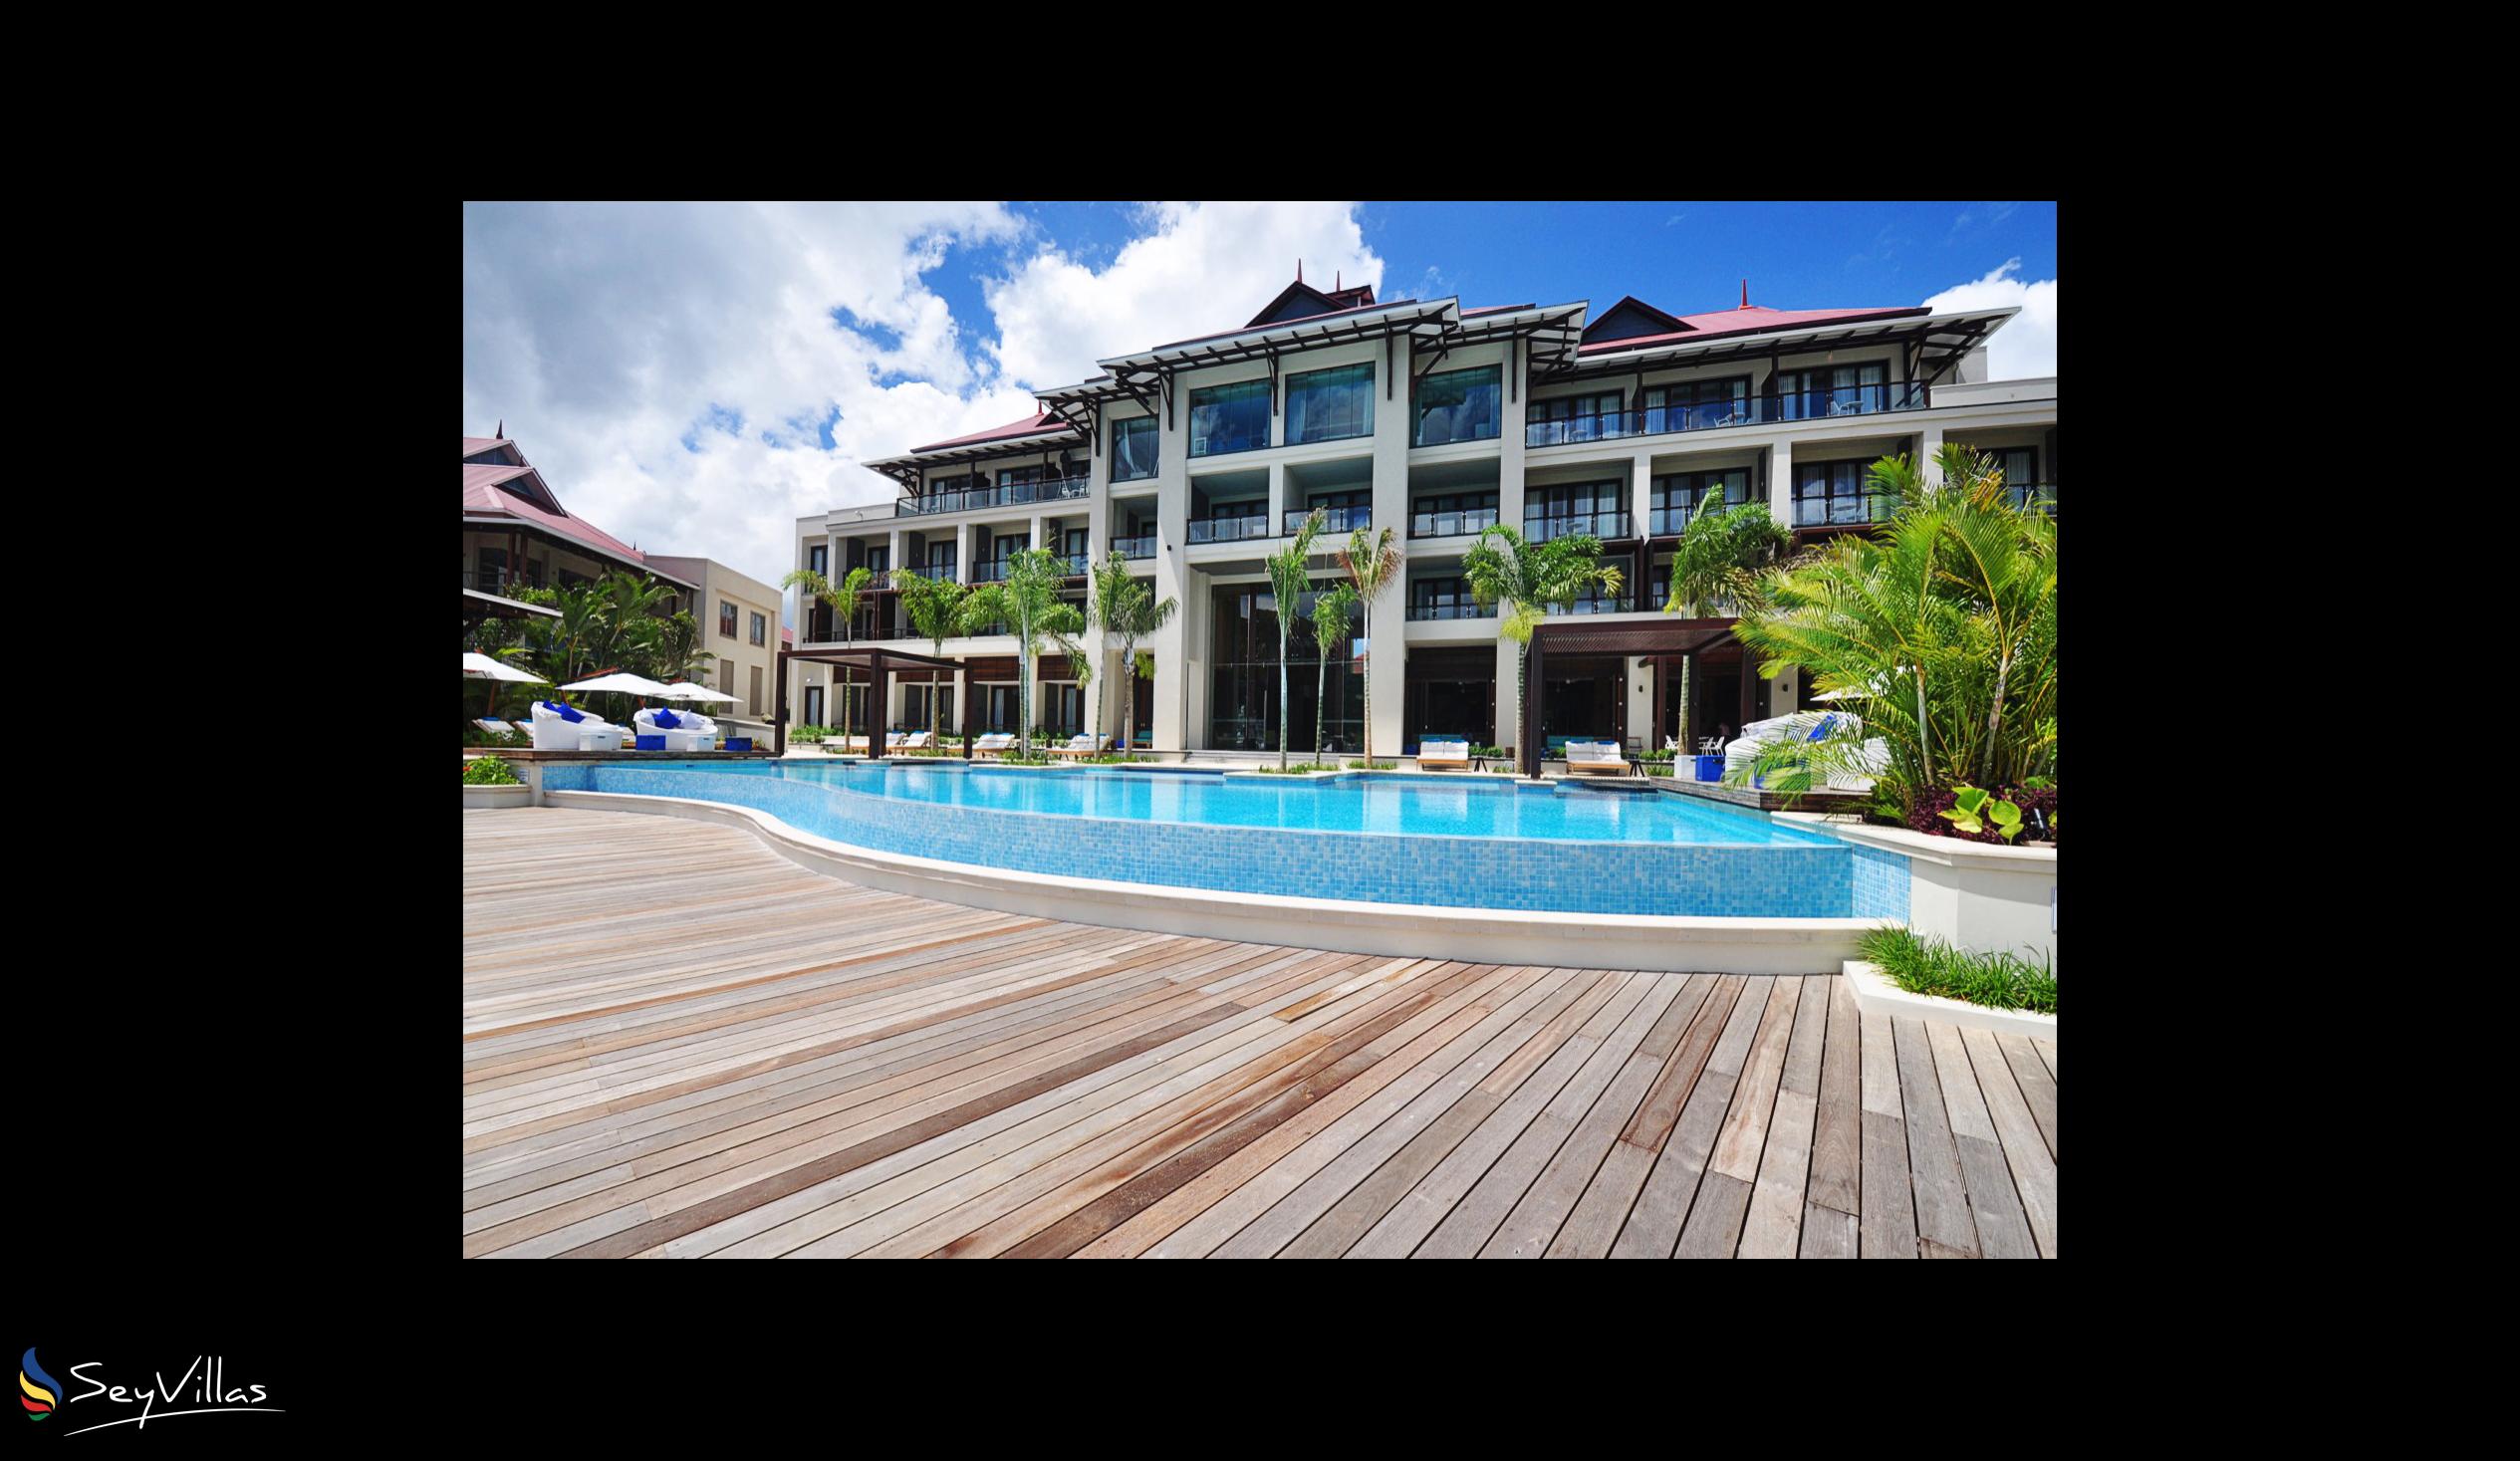 Photo 3: Eden Bleu Hotel - Outdoor area - Mahé (Seychelles)